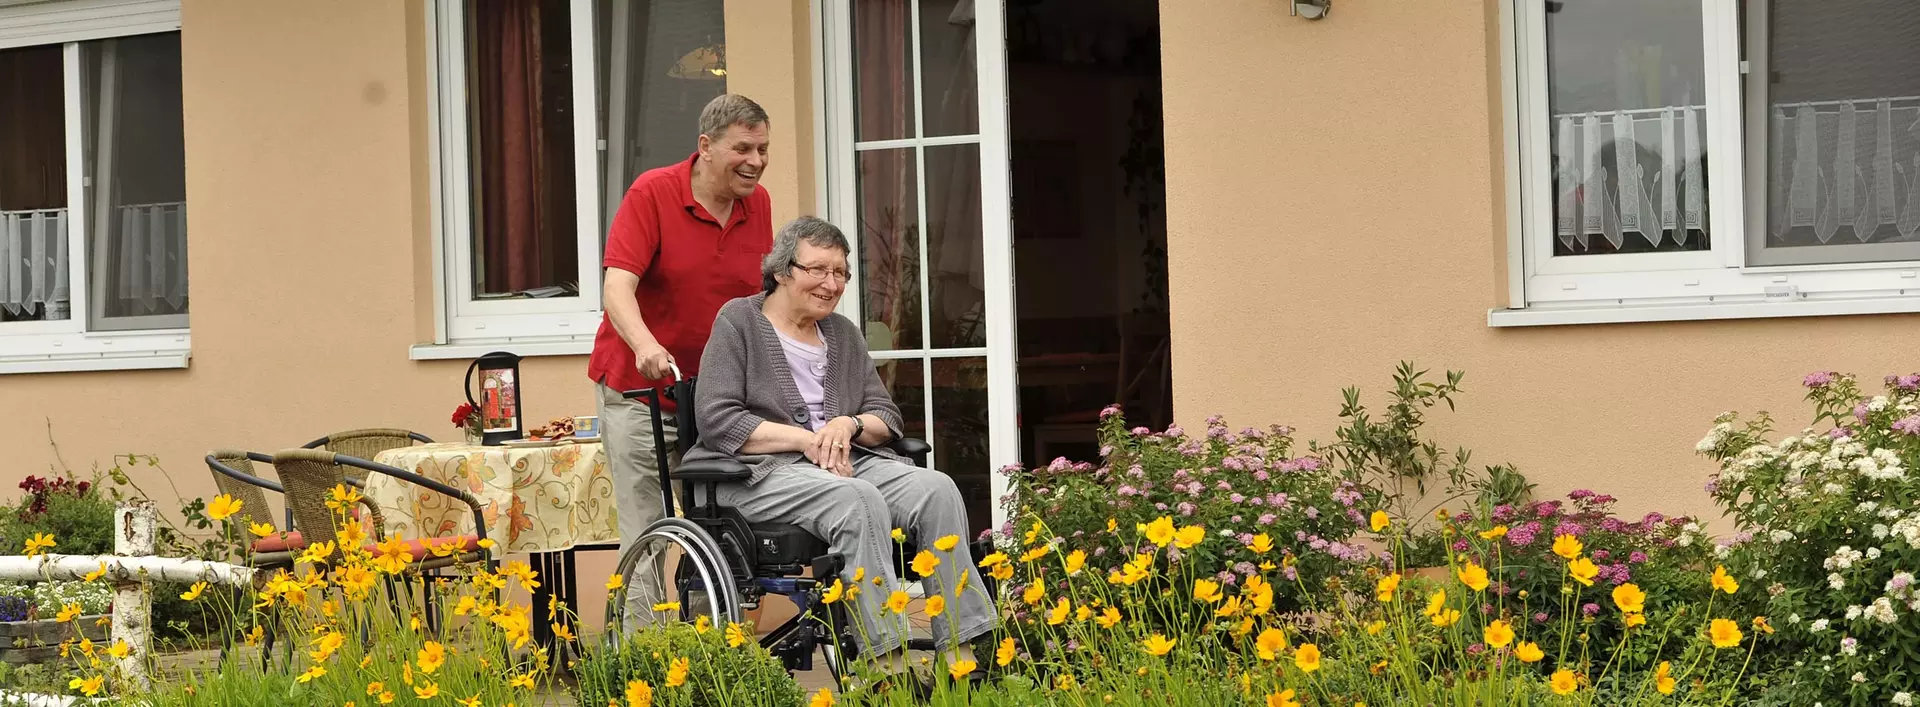 Urlaub für Rollstuhlfahrer auf dem Ferienhof mit barrierefreiem Zugang